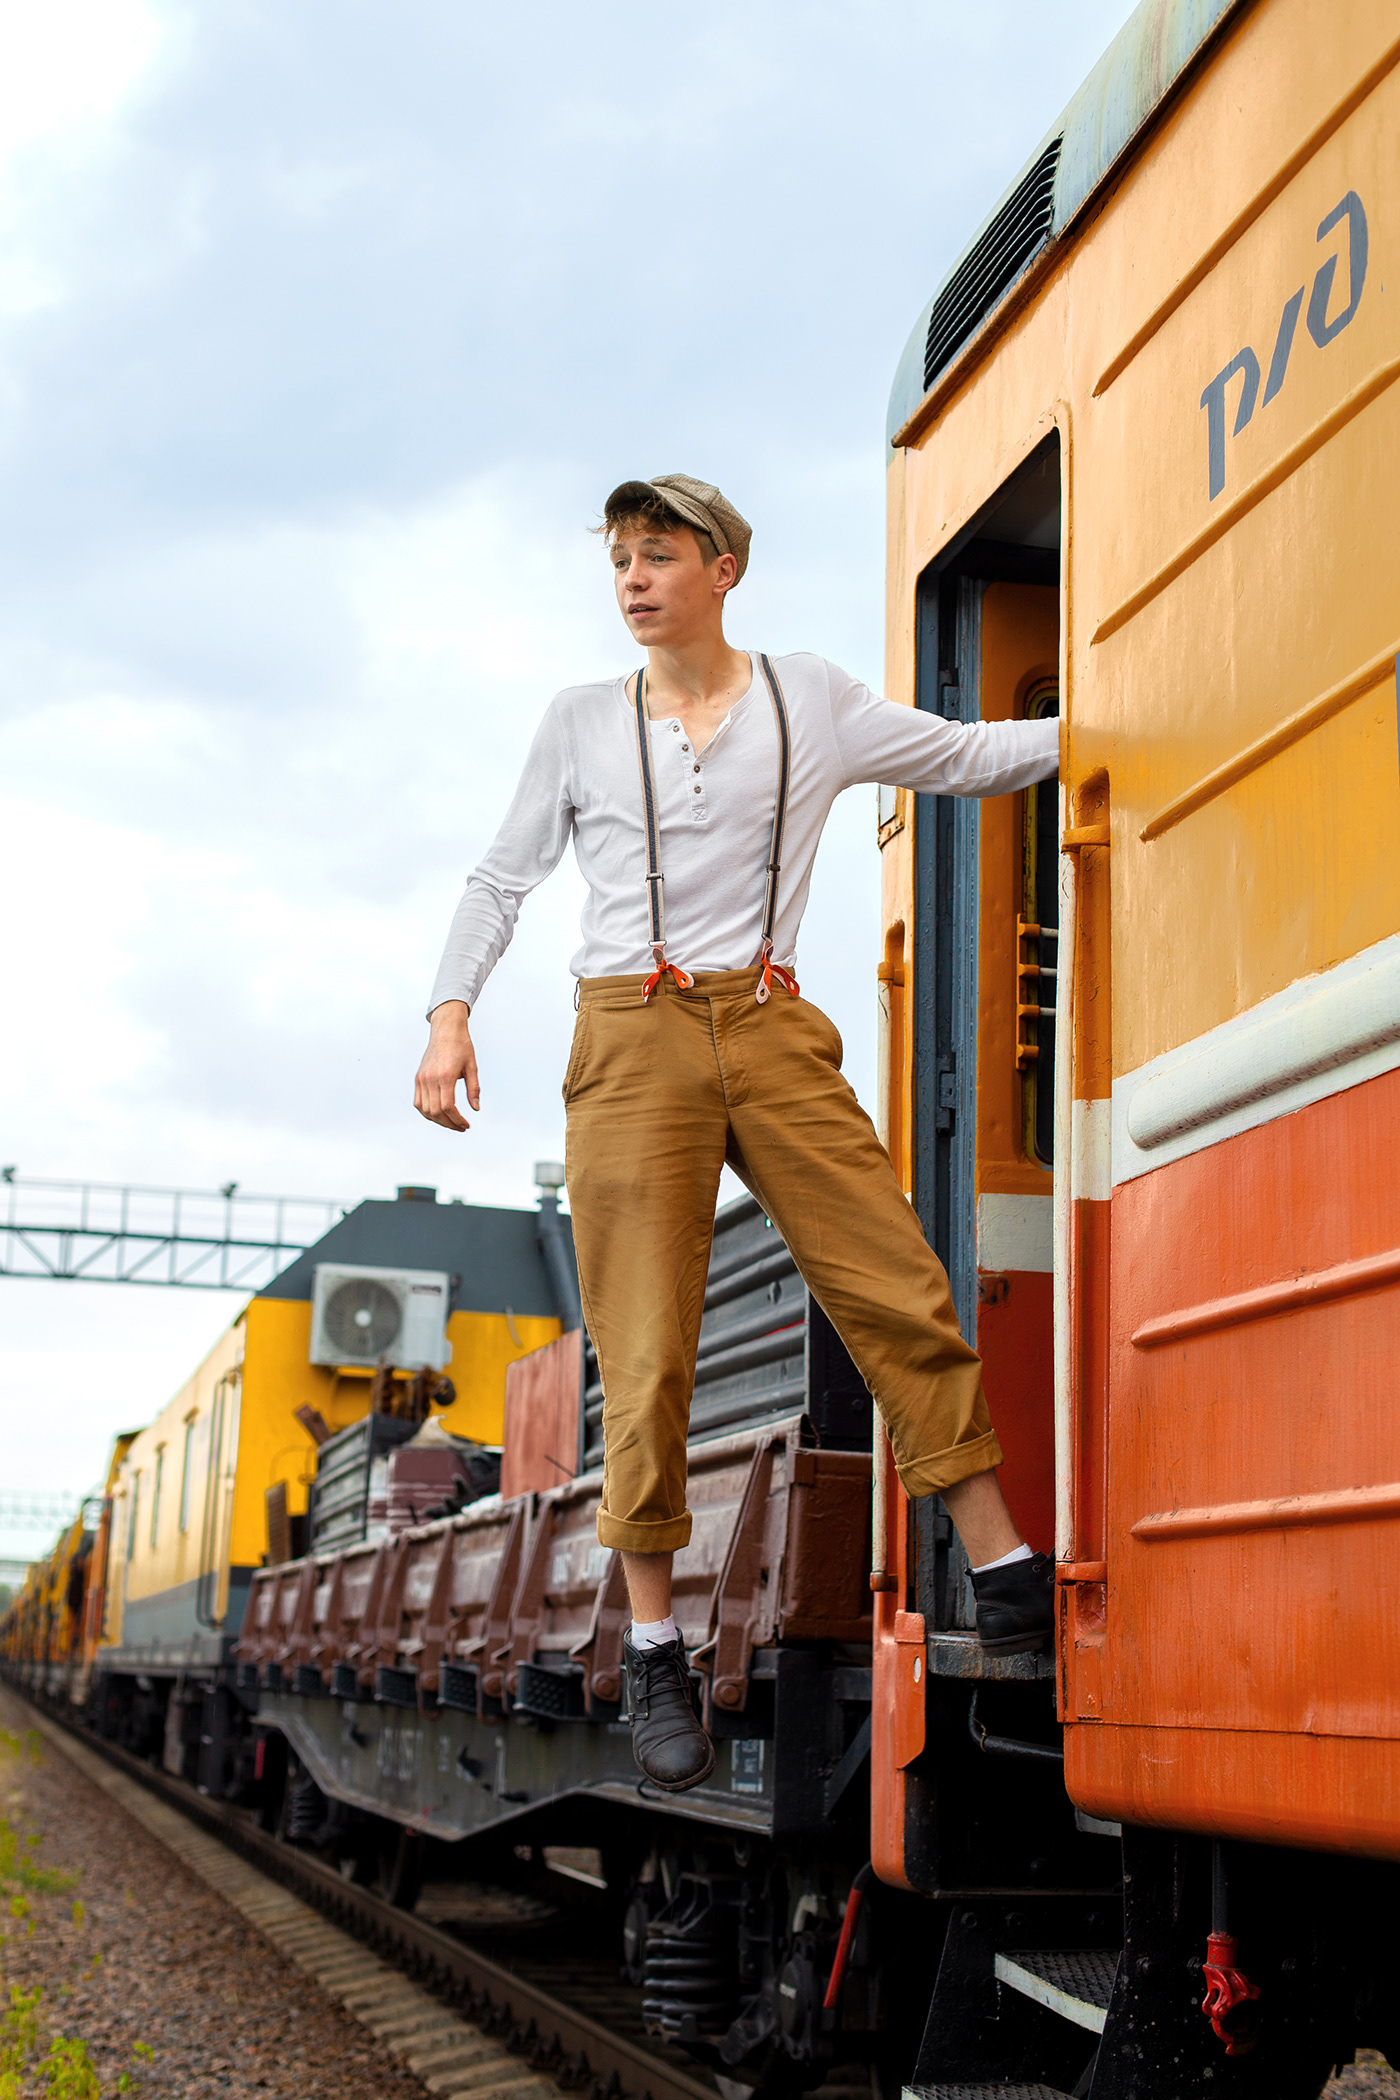 russian railways арт вагон железная дорога люди поезд портрет Ра рабочий ржд